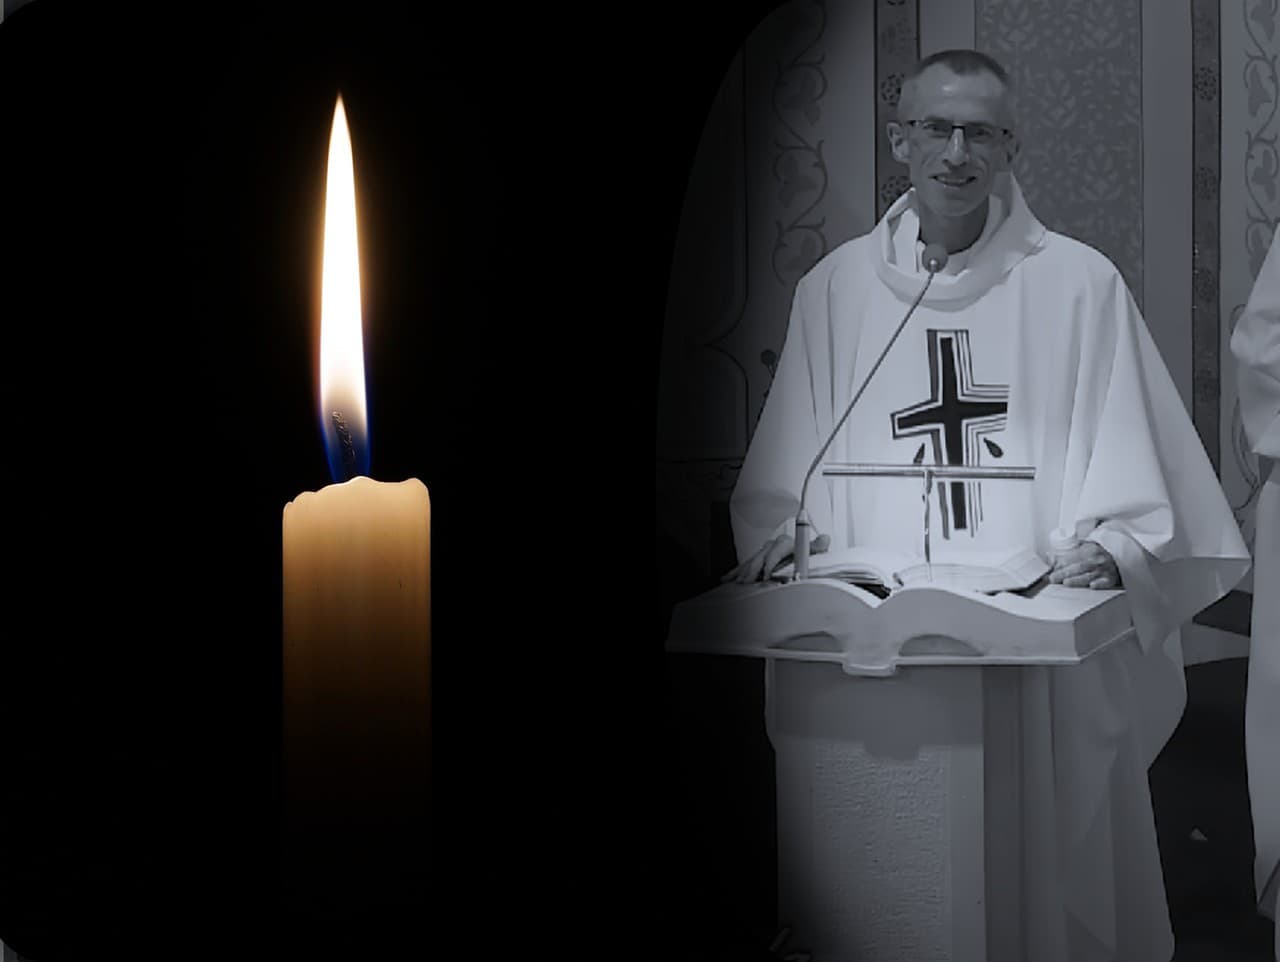 Svojich blízkych navždy opustil veľký muž: Kňaz Jozef Žvanda podľahol ťažkej chorobe